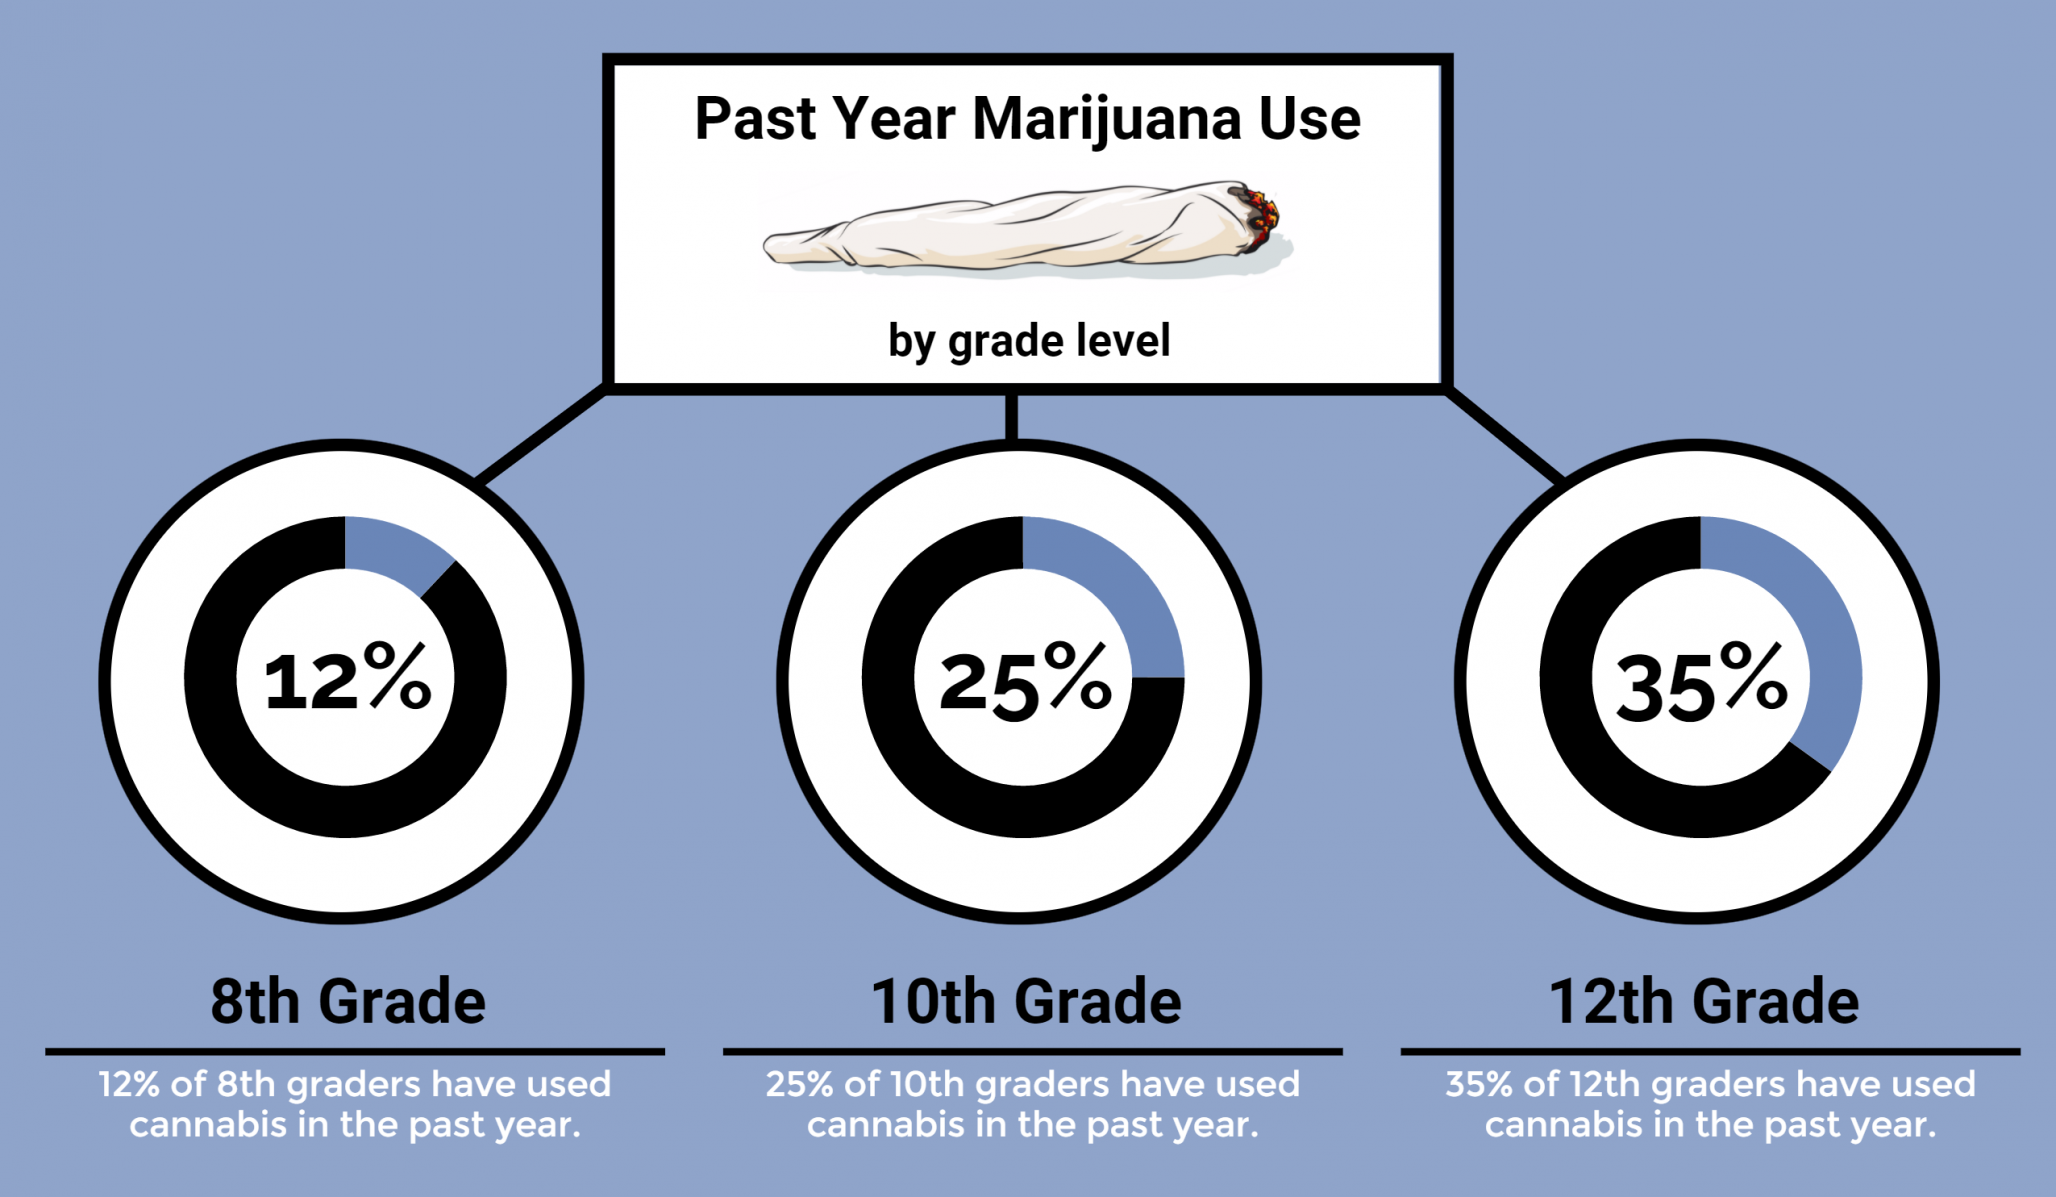 Changing Attitudes Towards Marijuana: Past Year Use